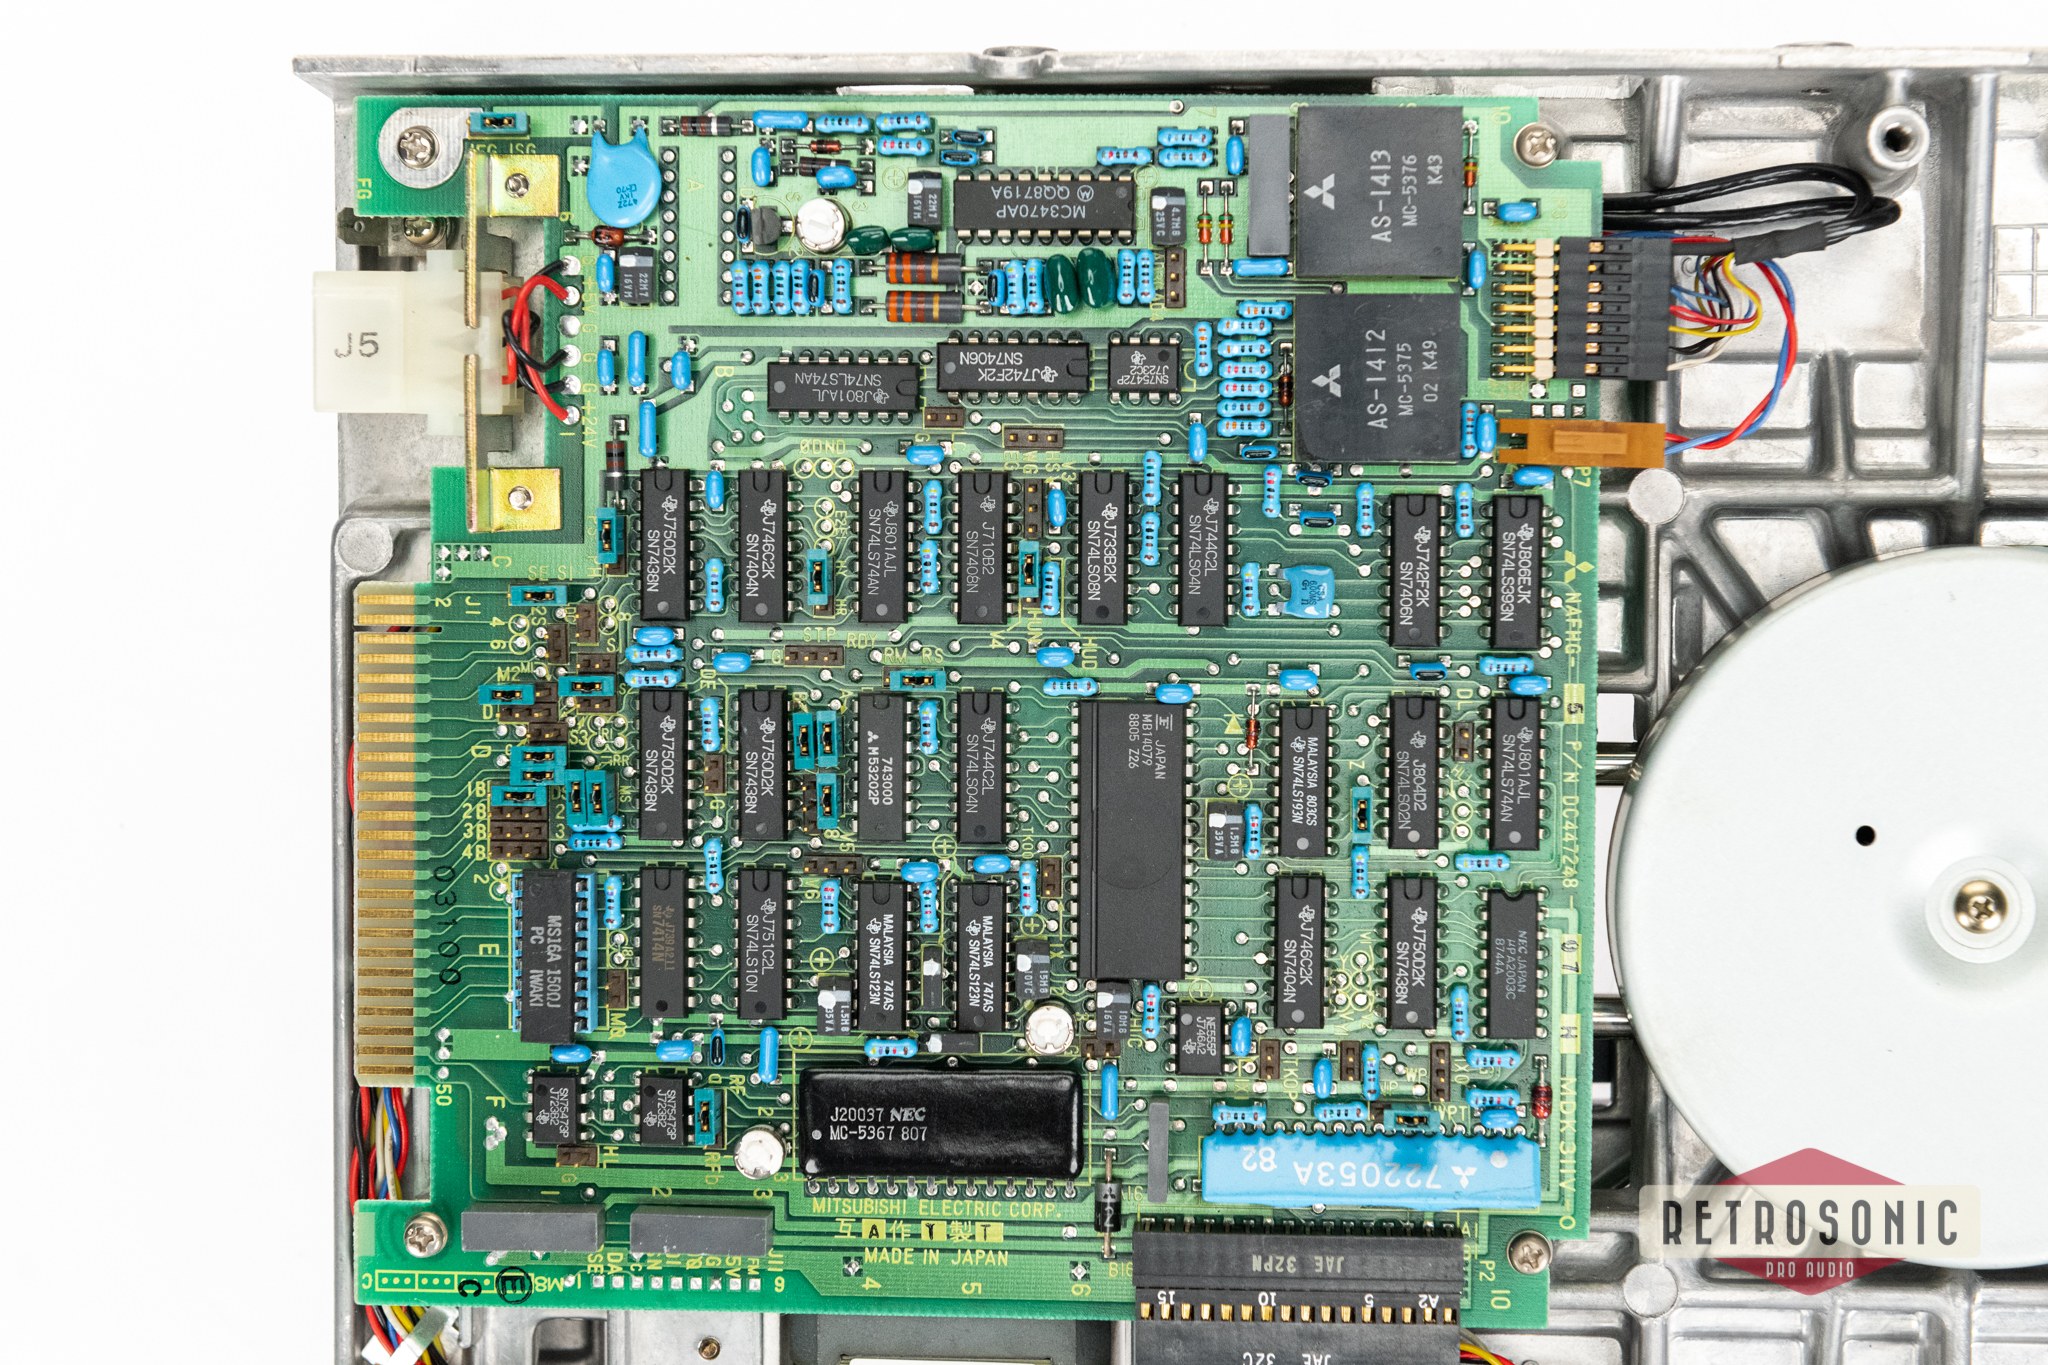 SSL Mitsubishi 8" Internal Floppy Drive (M2896-63-02U) 2 pcs bundle